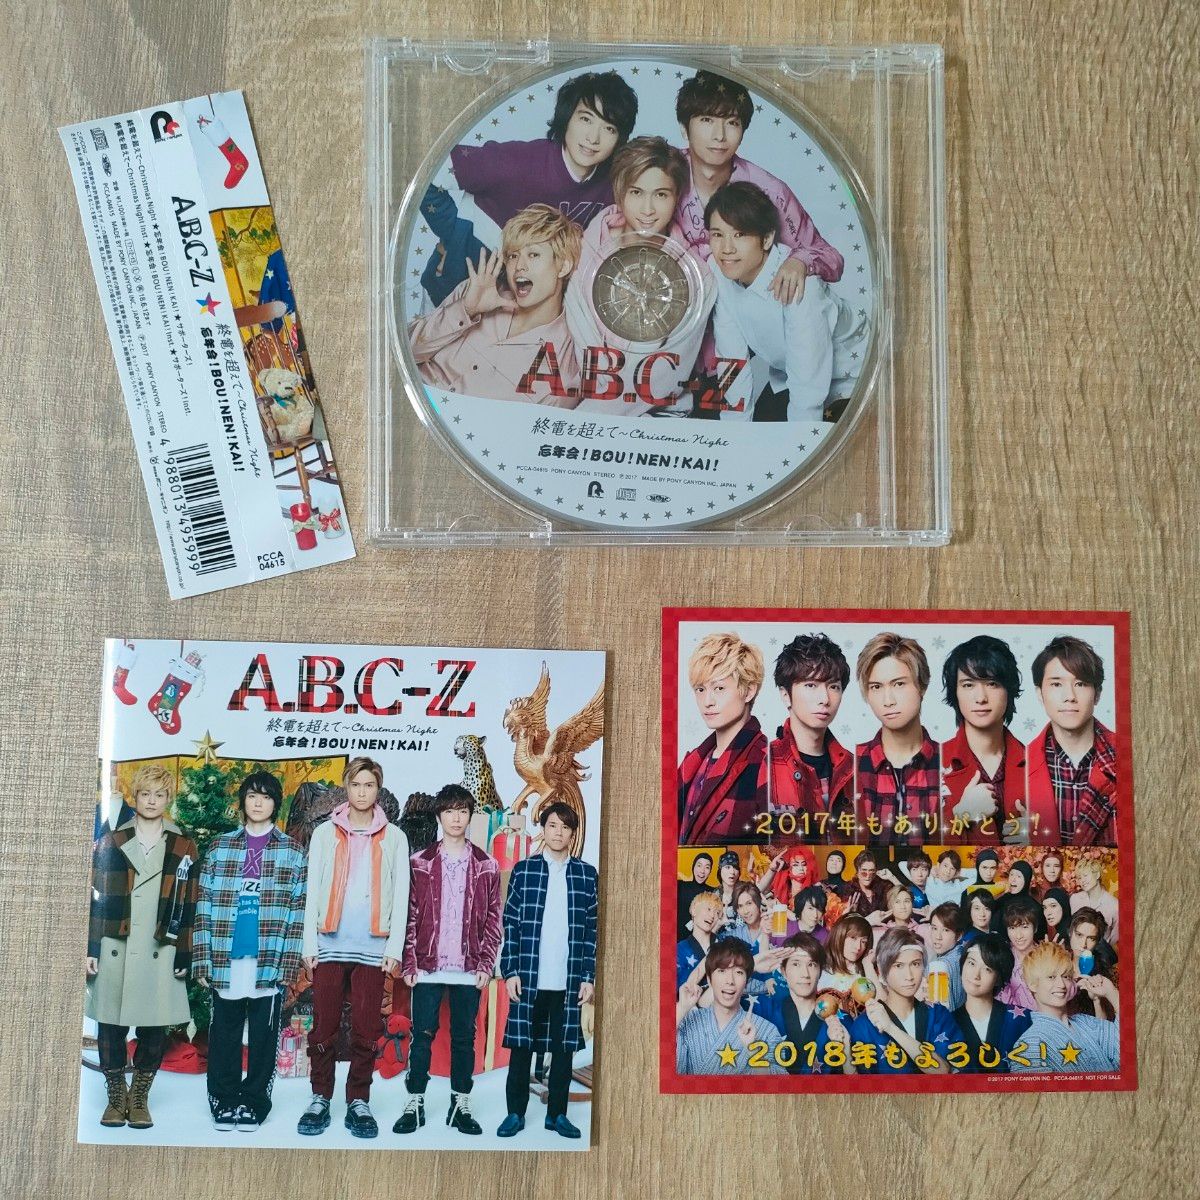 A.B.C-Z 終電を超えて / 忘年会 シングル CD セット まとめ売り 初回限定盤 通常盤 DVD グッズセット